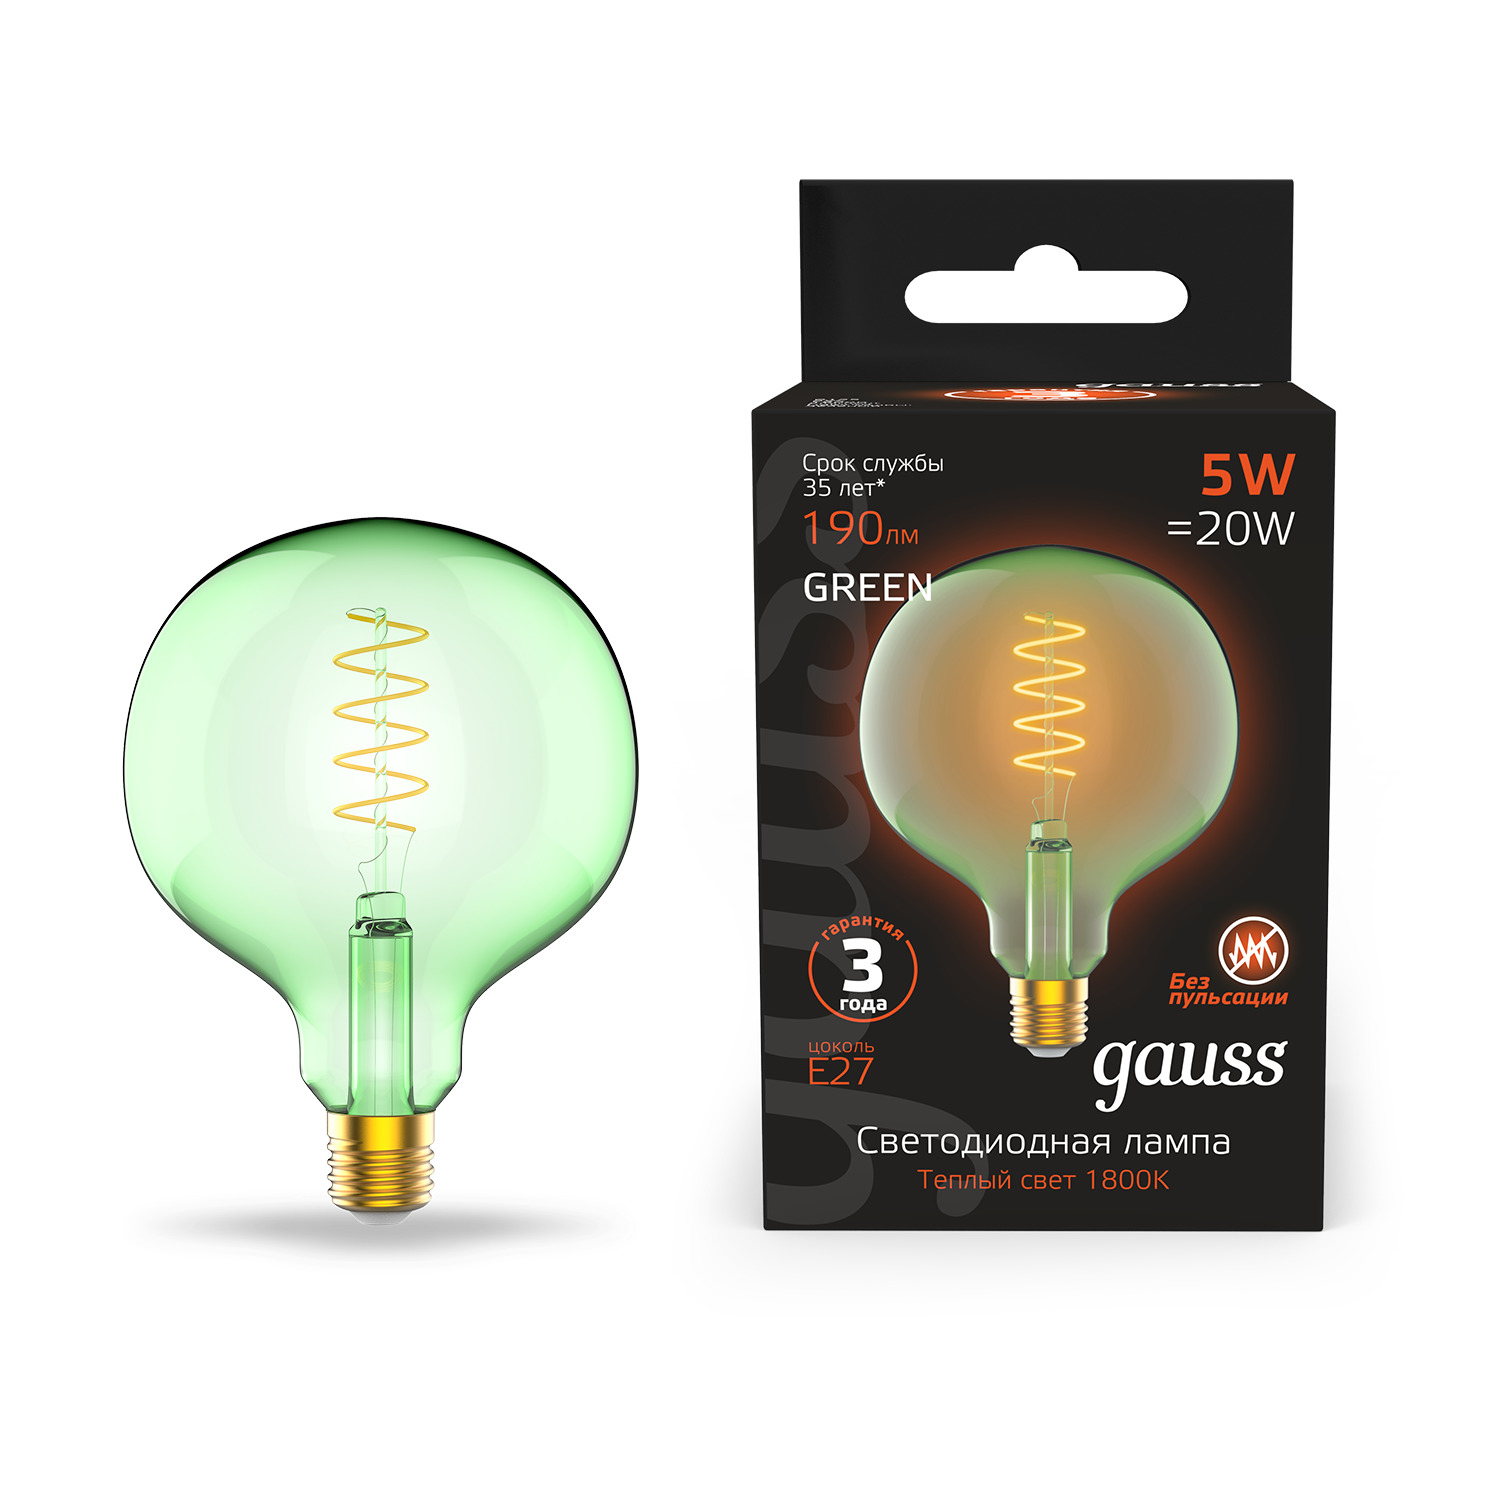 Лампа Gauss Filament Flexible G125 5W 1800К Е27 green лампа gauss led vintage filament flexible fd180 6w e27 220x280mm gray 2400k 1 6 165802008